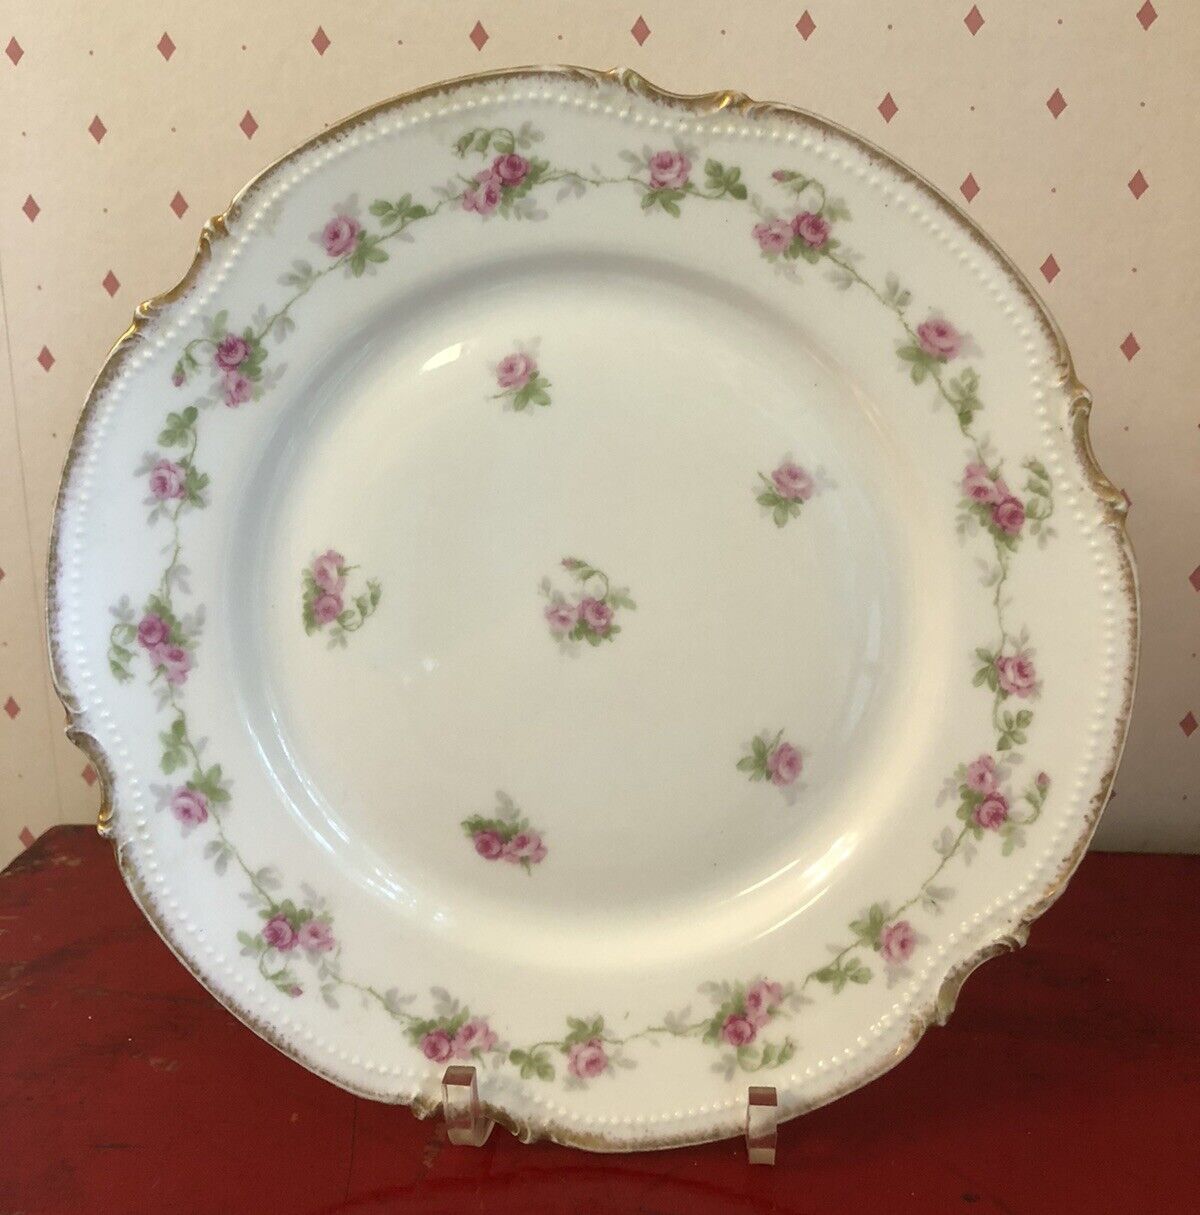 Antique Coronet Limoges France Plate Porcelain B. MoeM Pink Roses Gold Trim